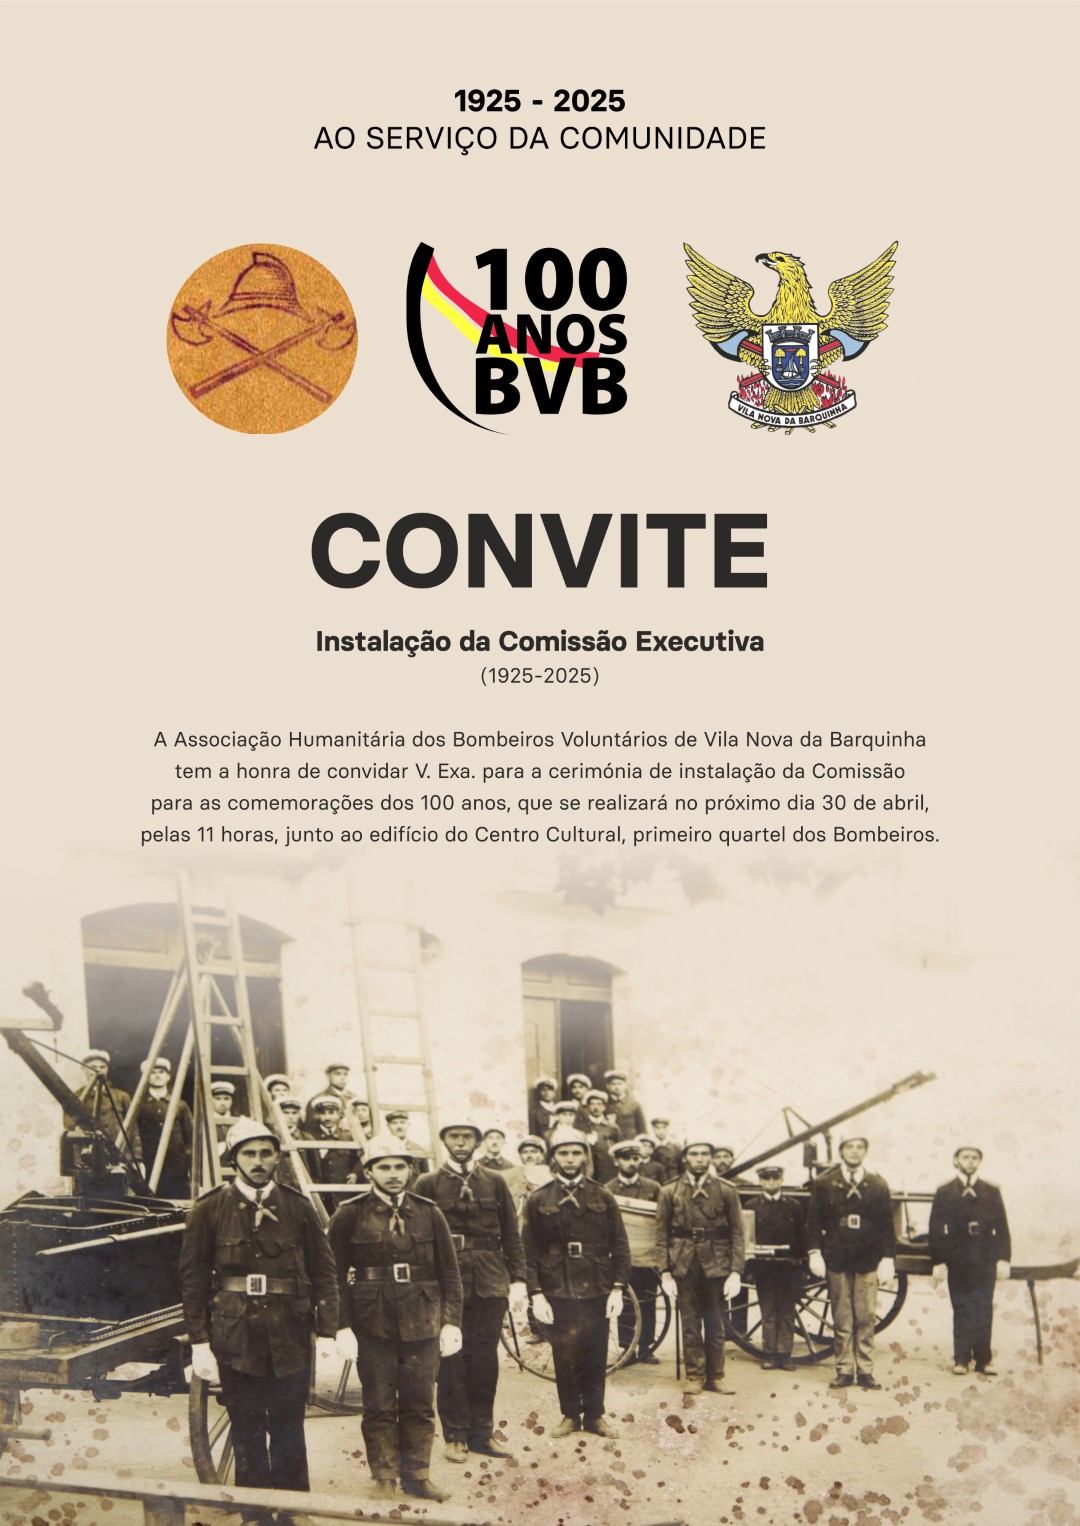 100 ANOS BVB poster